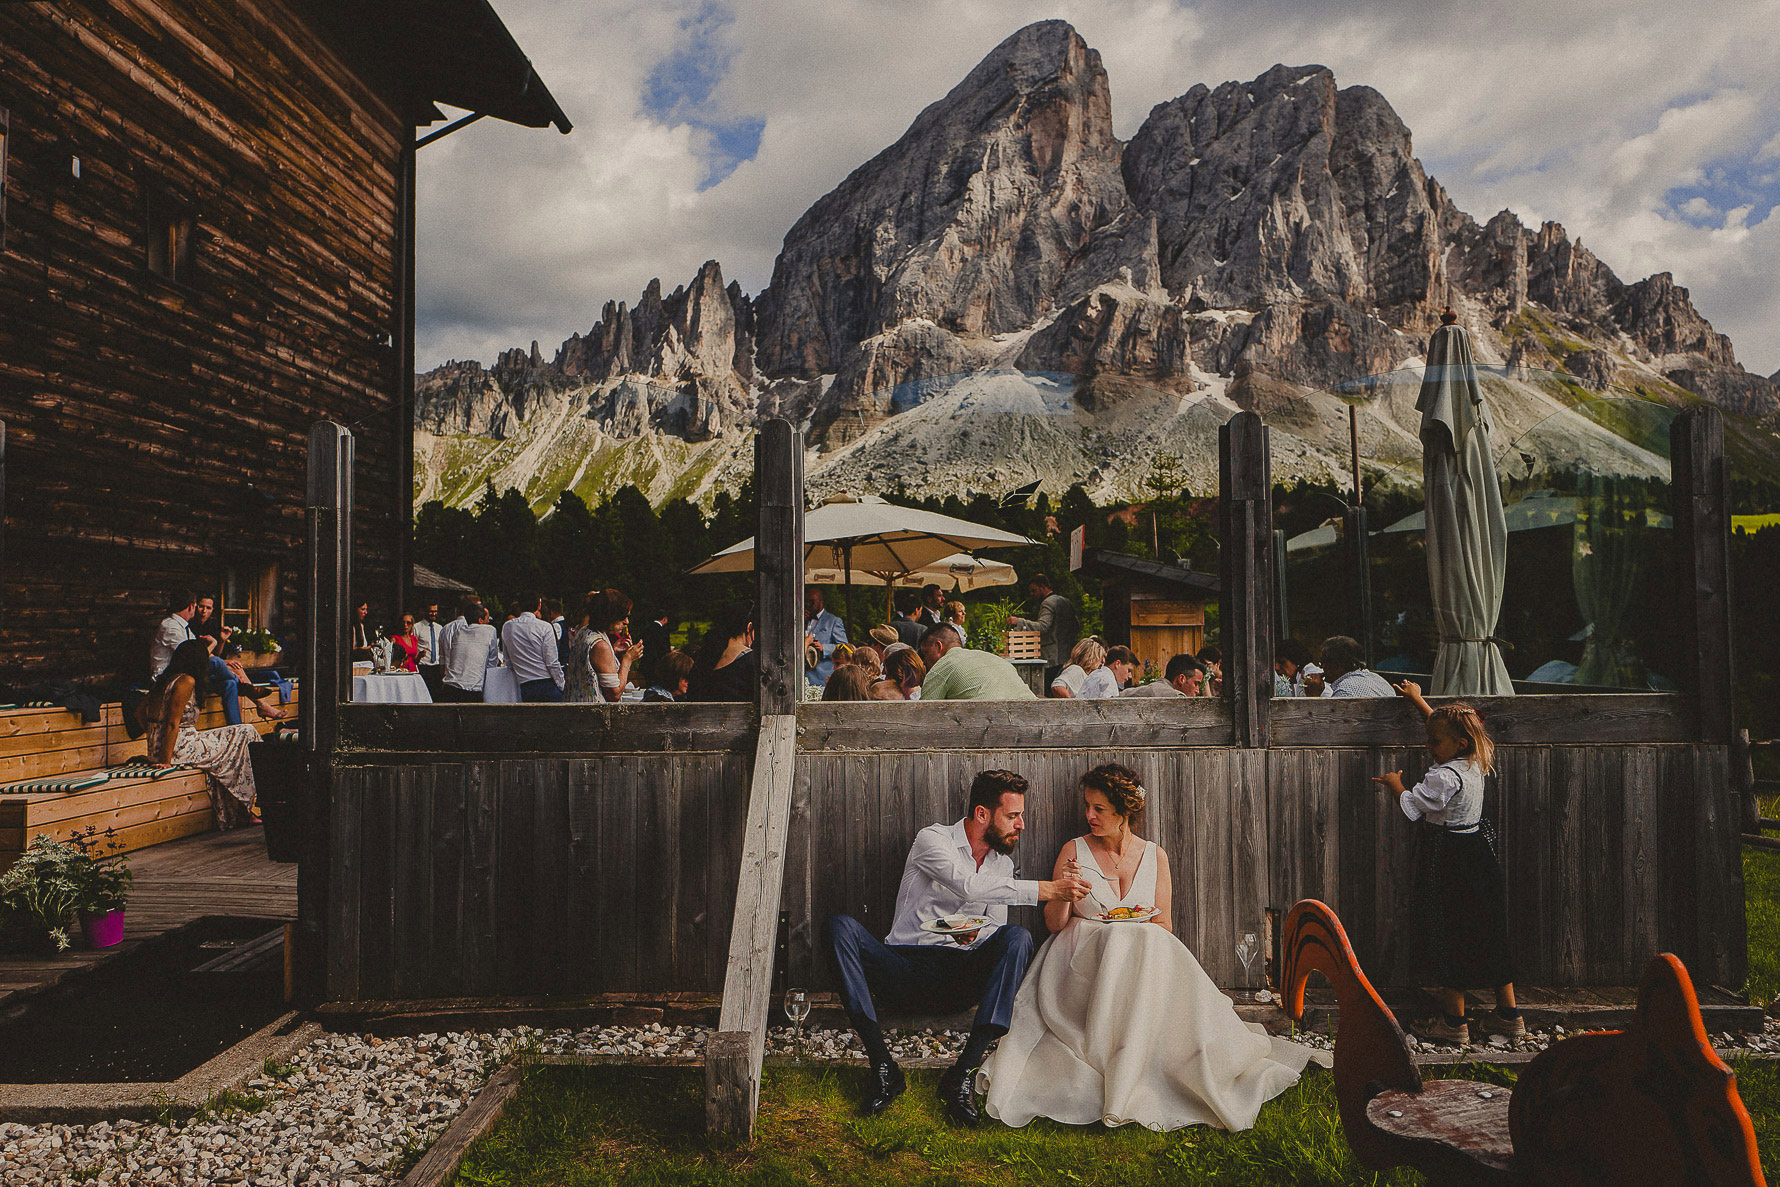 fotografia di matrimonio | Livio Lacurre fotografo matrimonio trentino alto adige, dolomiti